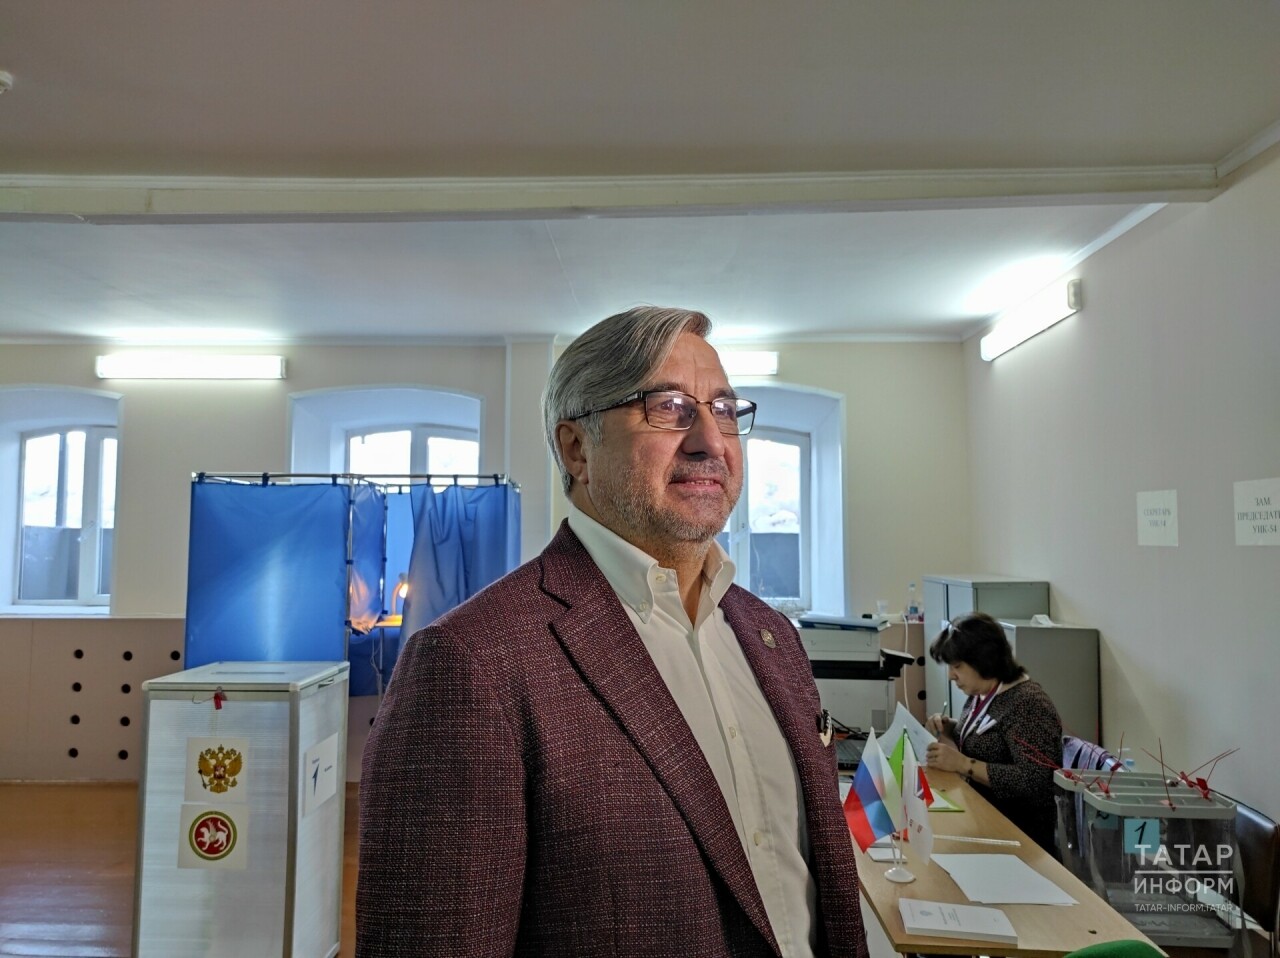 Василь Шайхразиев: Участвовать в выборах - это значит показать наше единство